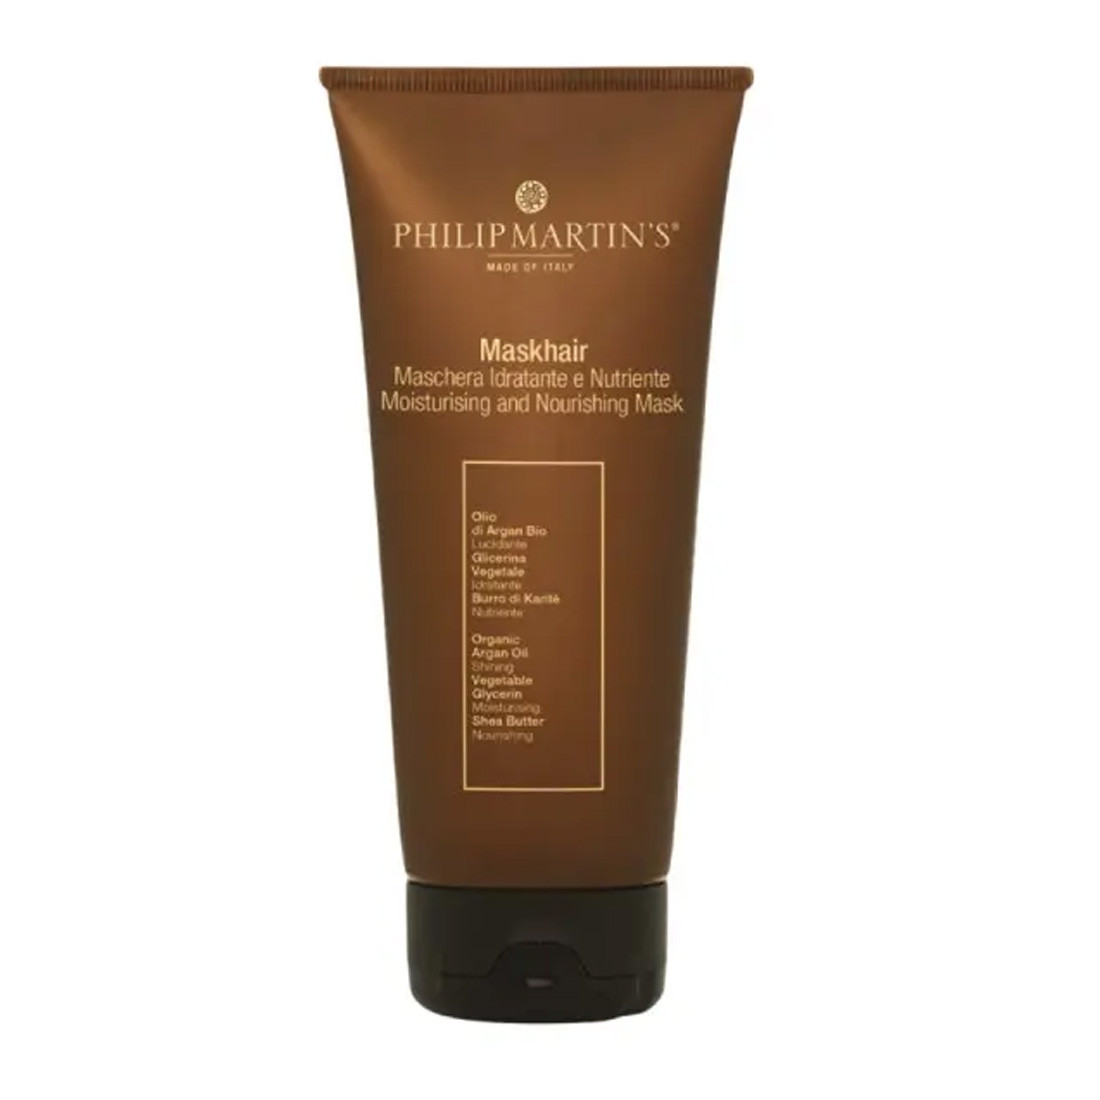 Philip Martins Maskhair - Увлажняющая и питательная маска для волос